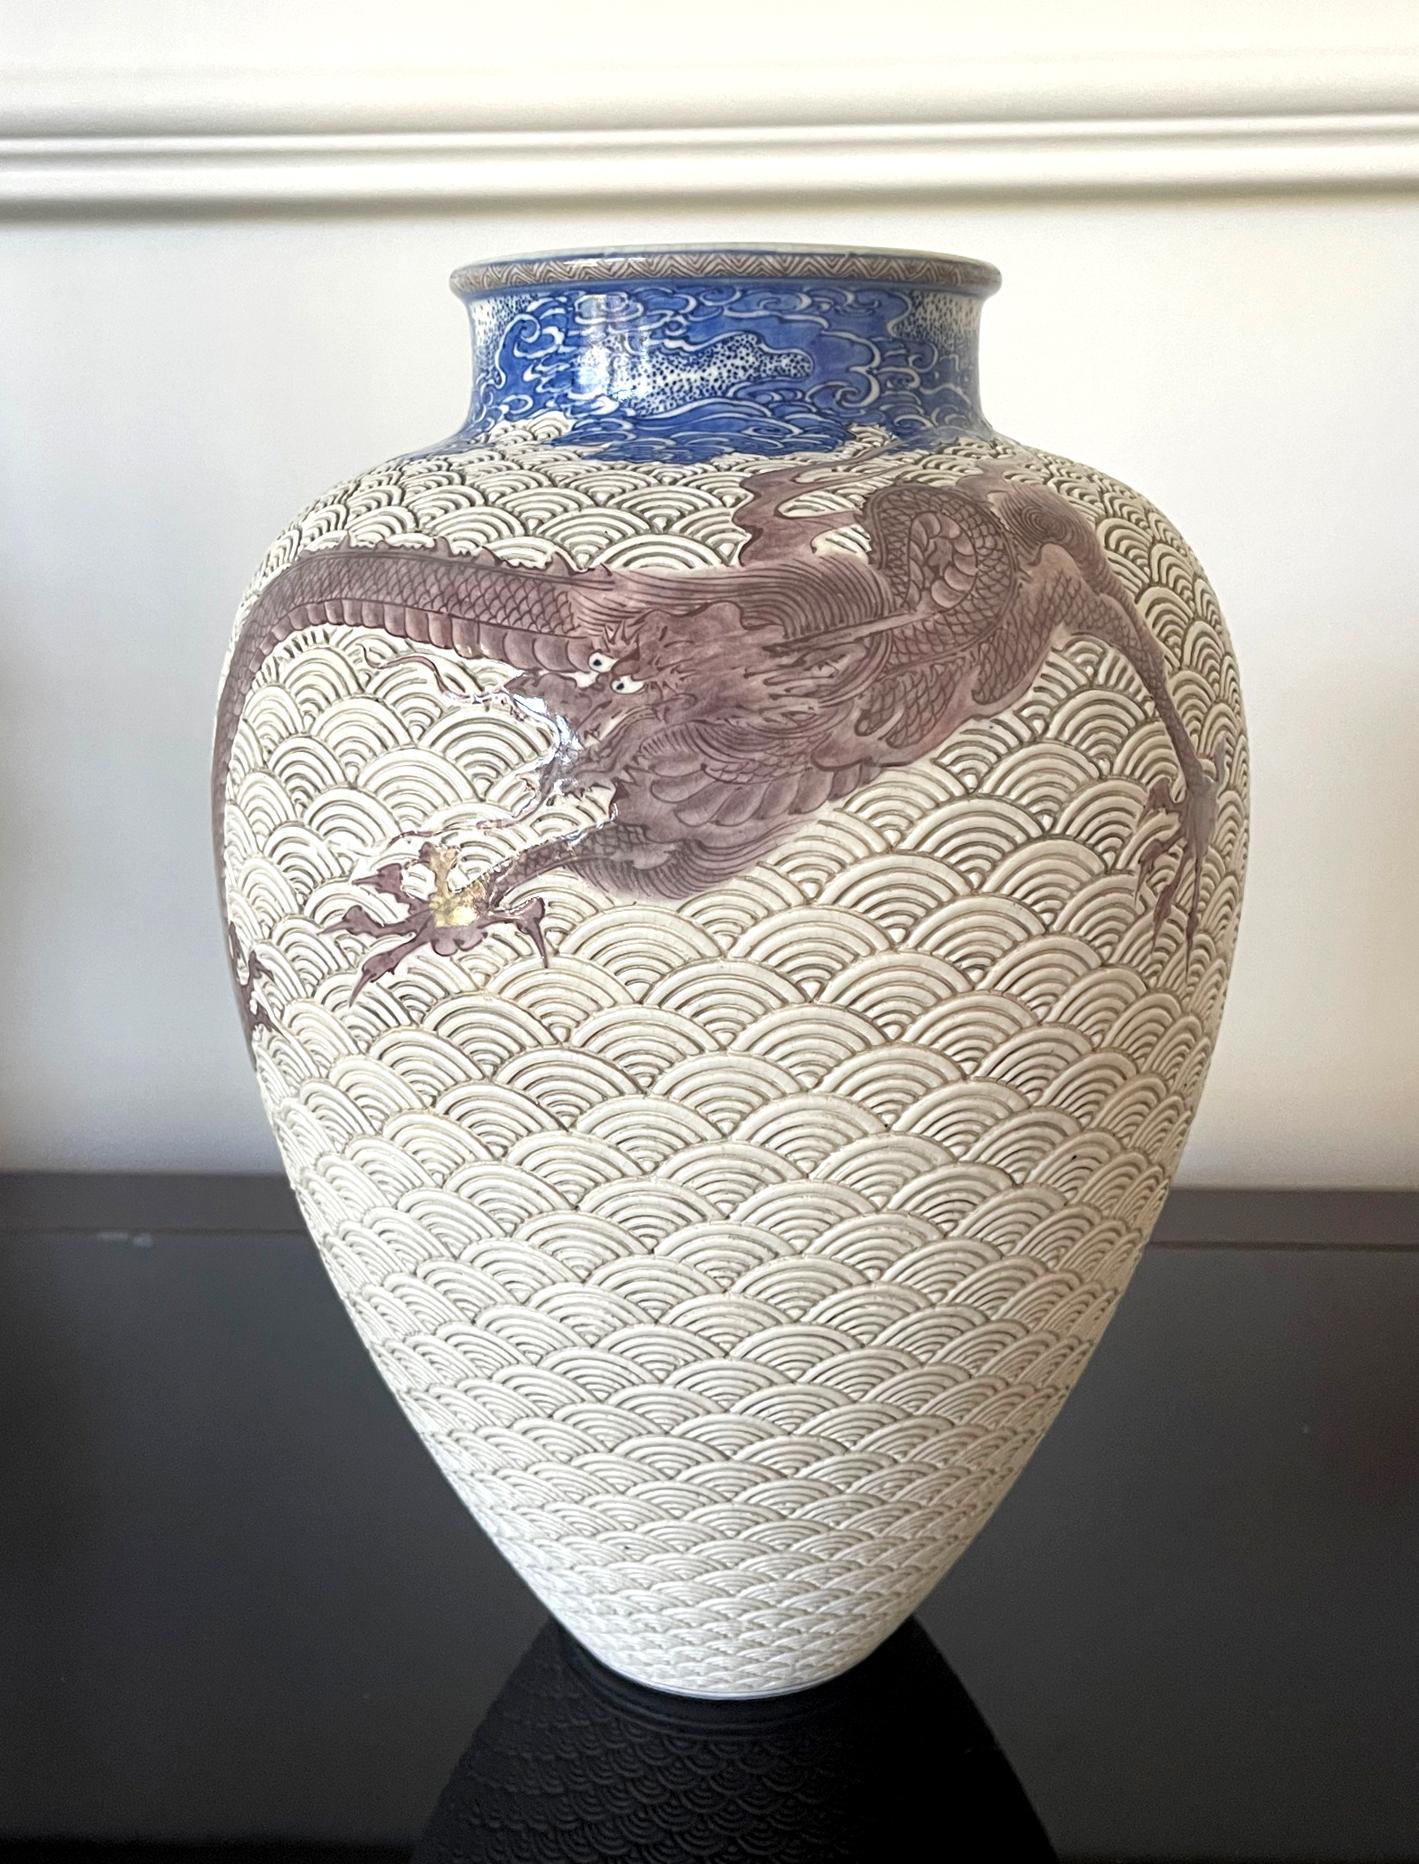 Eine große japanische Keramikvase des berühmten kaiserlichen Töpfers Makuzu Kozan (1842-1916) aus der Meiji-Zeit (ca. 1880-1890). Datiert auf seine Unterglasurphase nach 1887, nachdem er die neuen, aus dem Westen stammenden Farben erfolgreich